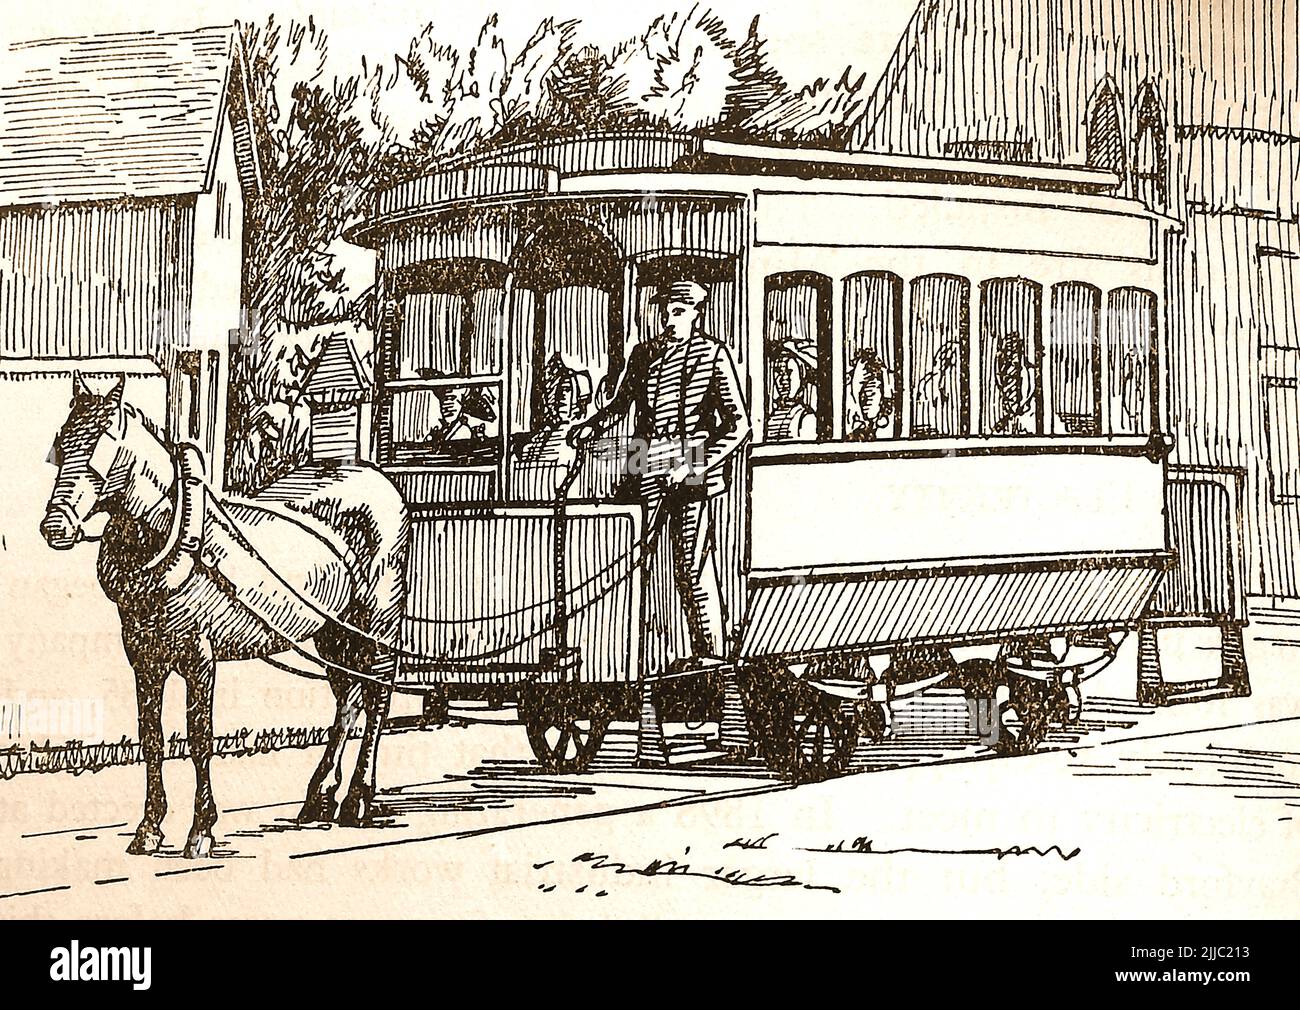 Geschichte von Lincoln, England - Eine 1904 Pferdestraßenbahn in Lincoln, England. Stockfoto